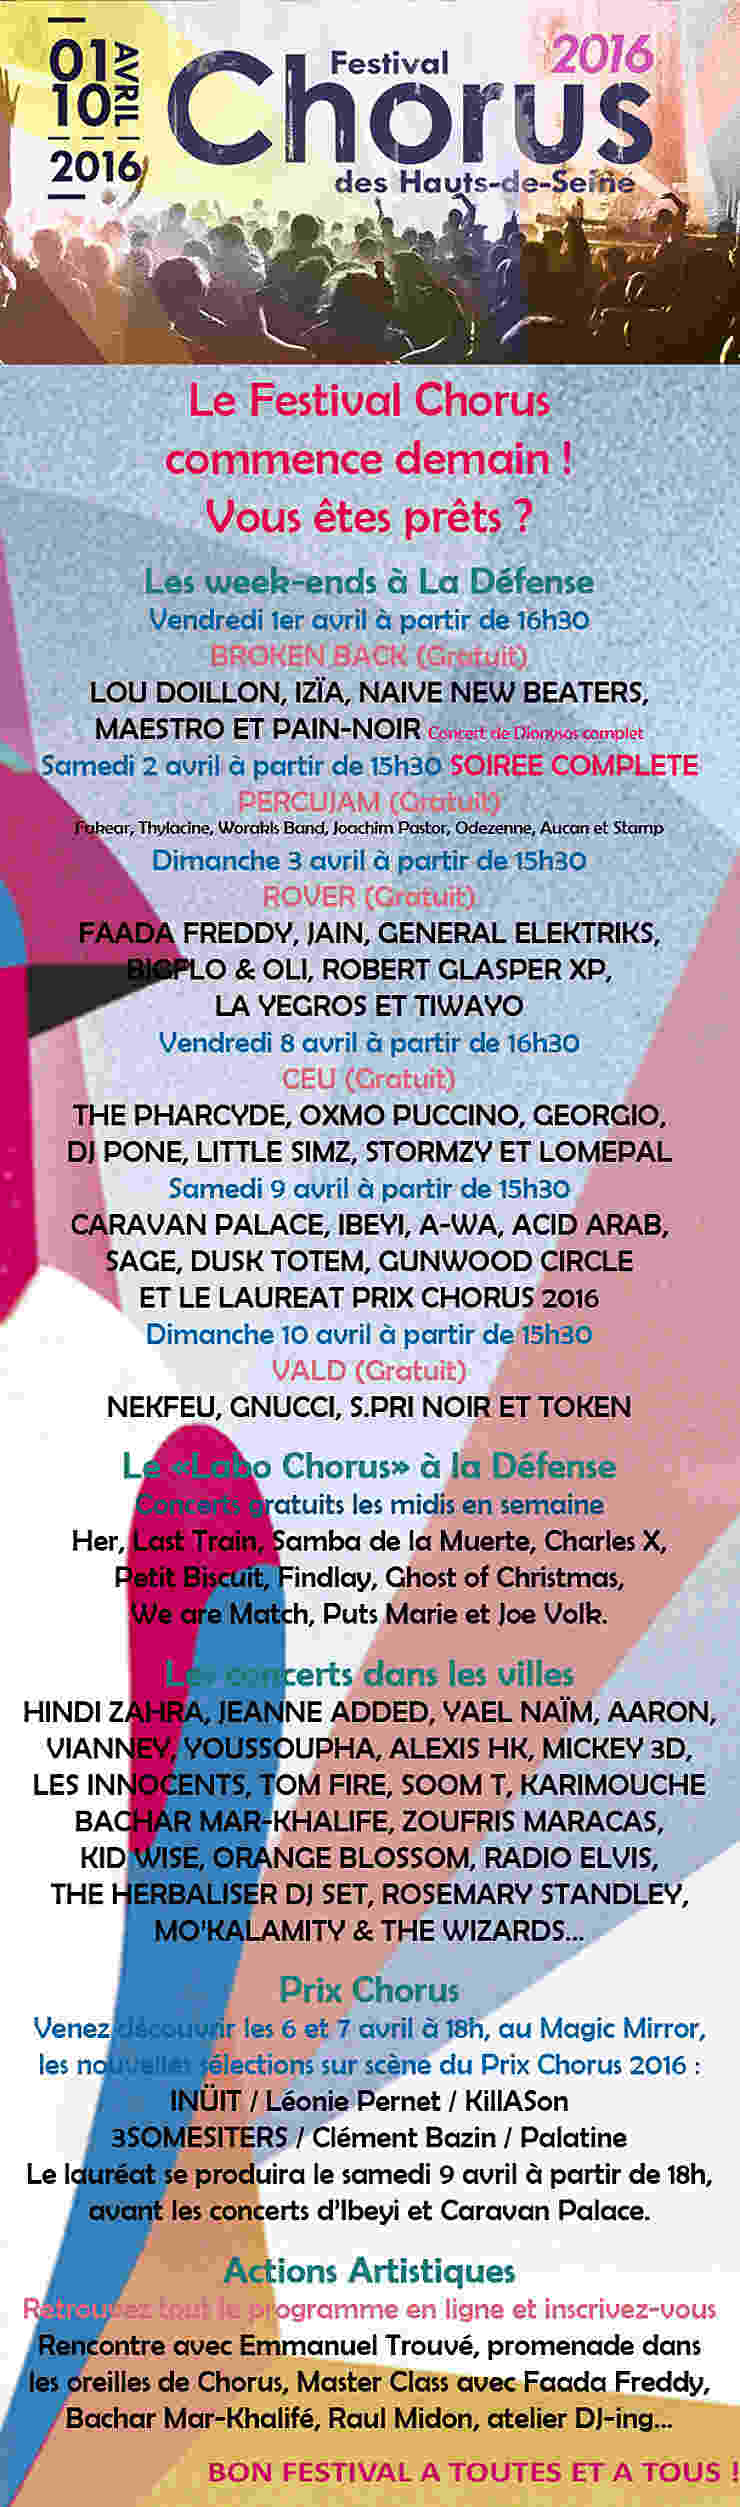 Festival Chorus des Hauts-de-Seine à La Défense et dans les Hauts-de-Seine